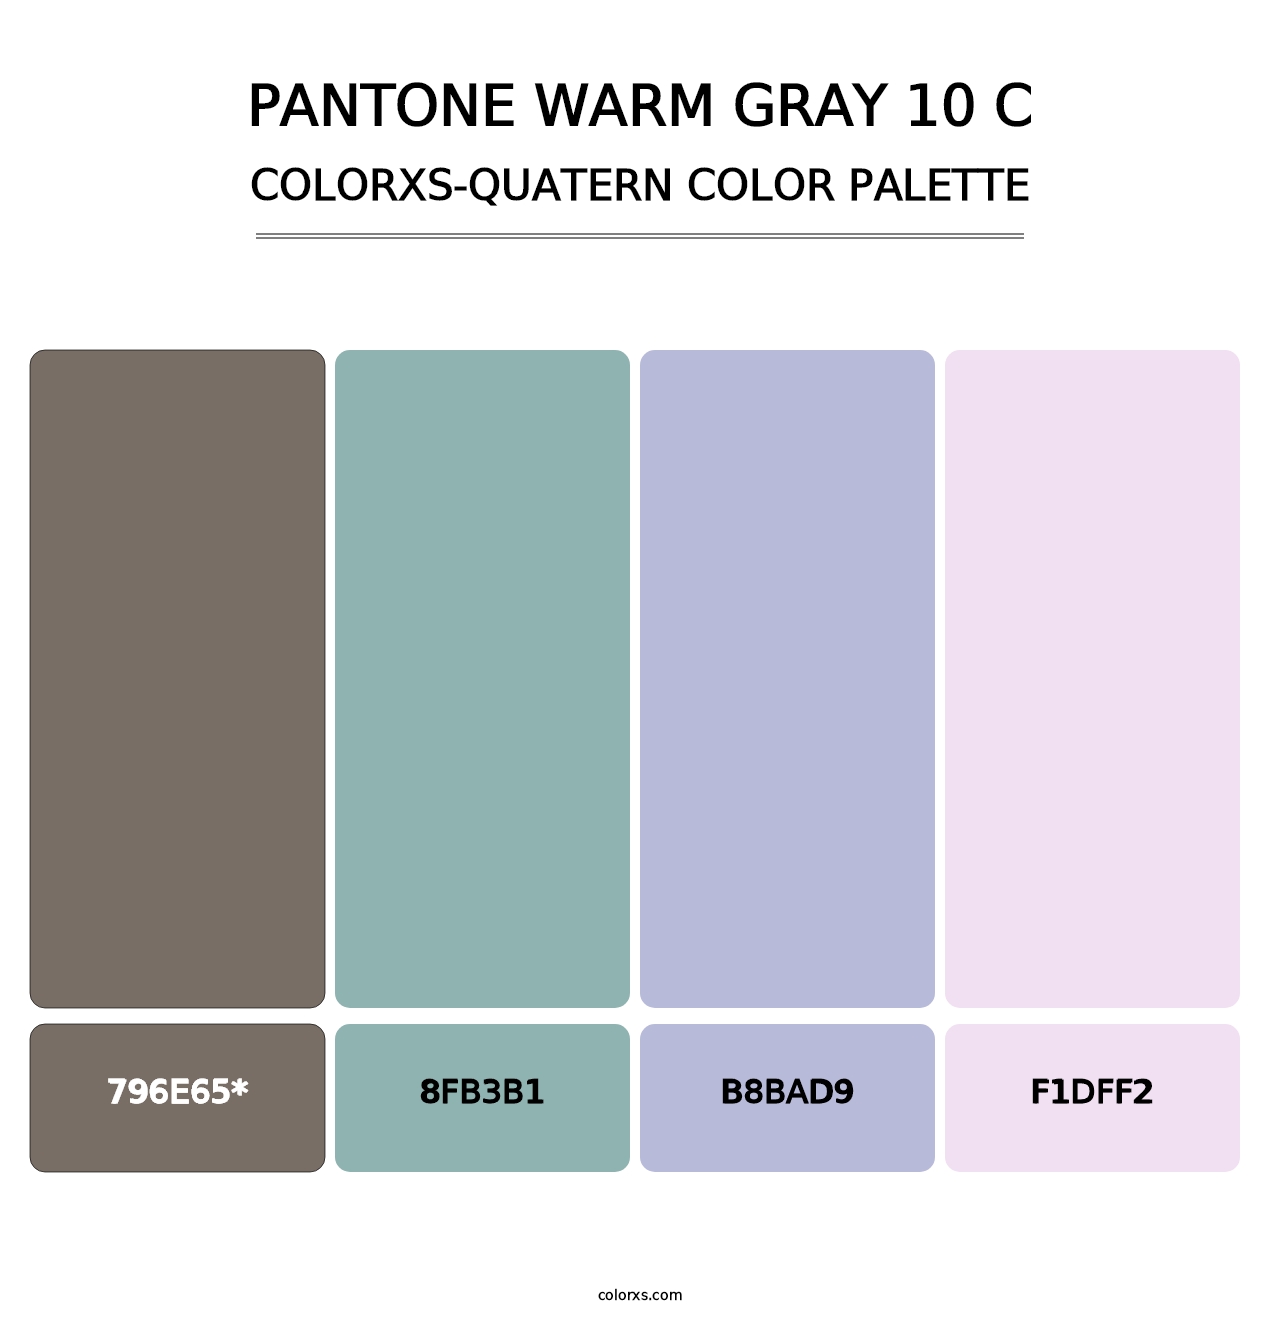 PANTONE Warm Gray 10 C - Colorxs Quatern Palette